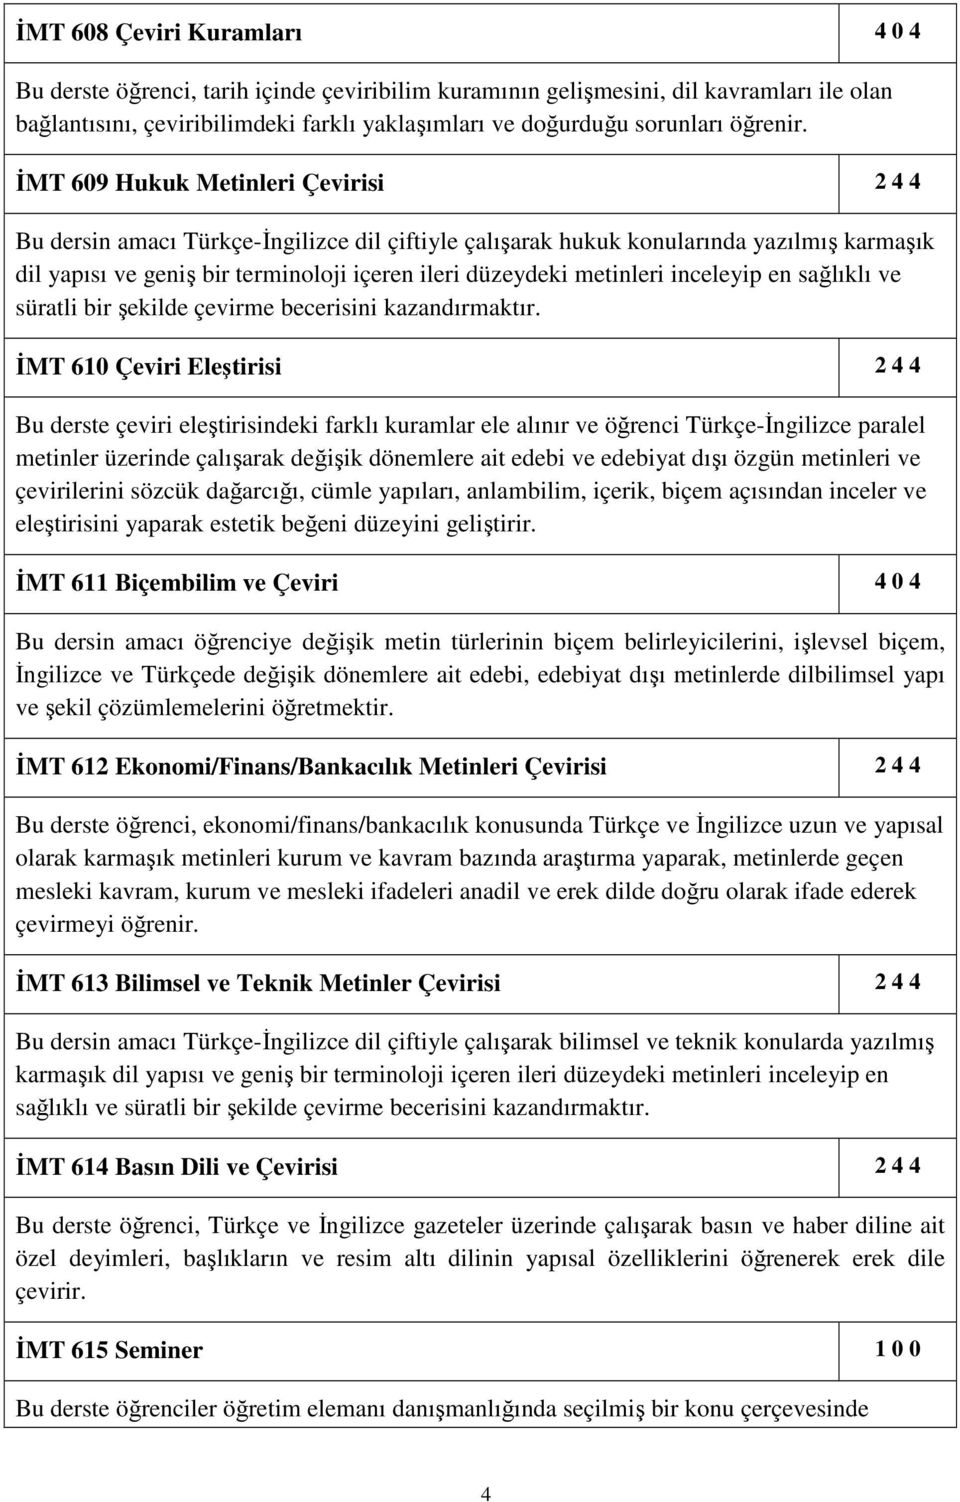 ĐMT 609 Hukuk Metinleri Çevirisi 2 4 4 Bu dersin amacı Türkçe-Đngilizce dil çiftiyle çalışarak hukuk konularında yazılmış karmaşık dil yapısı ve geniş bir terminoloji içeren ileri düzeydeki metinleri